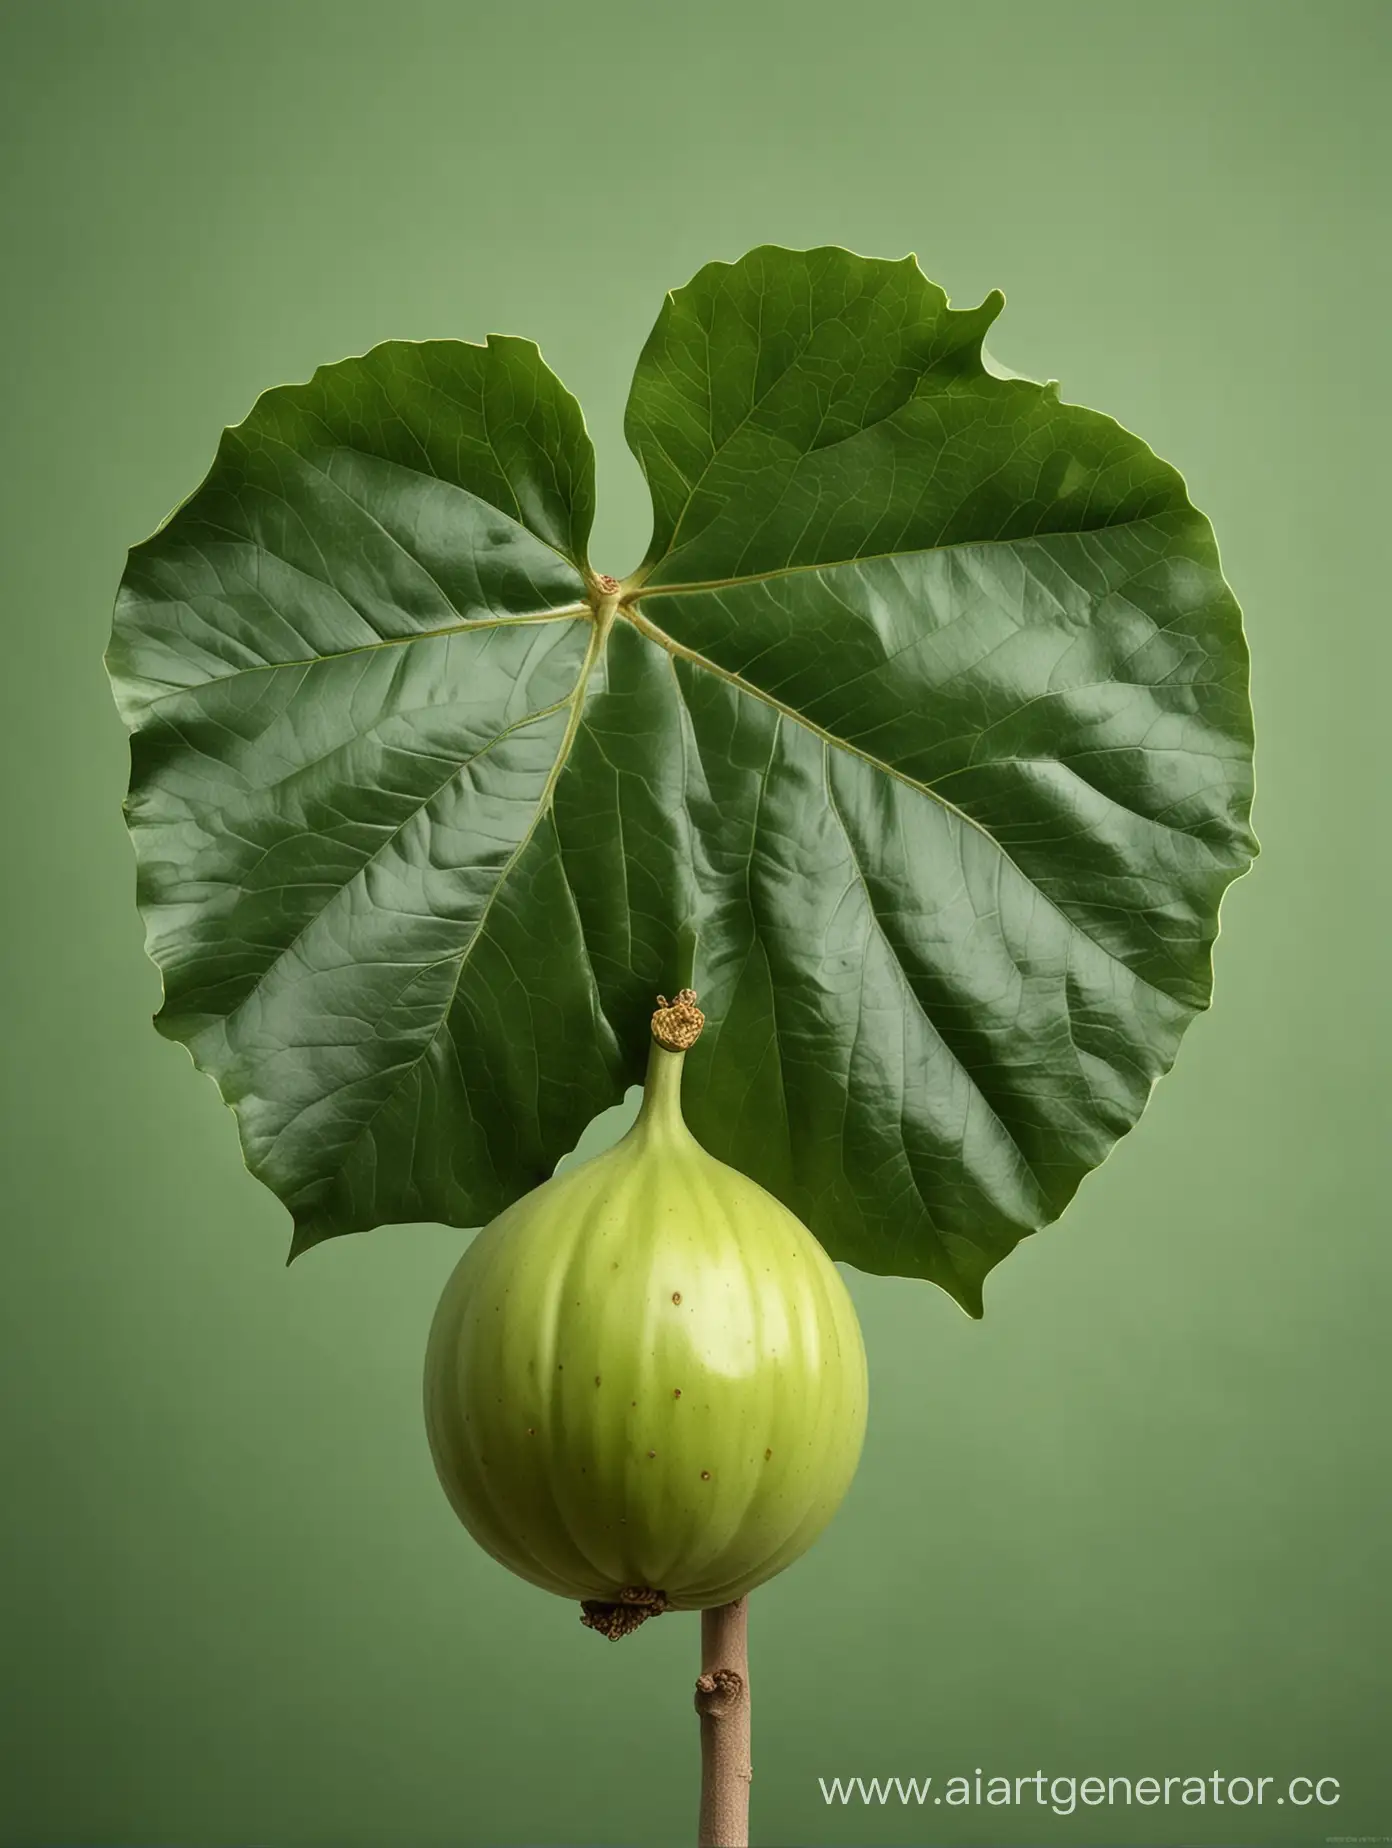 Luscious-Big-Fig-on-Verdant-Green-Leaf-against-a-Lush-Background